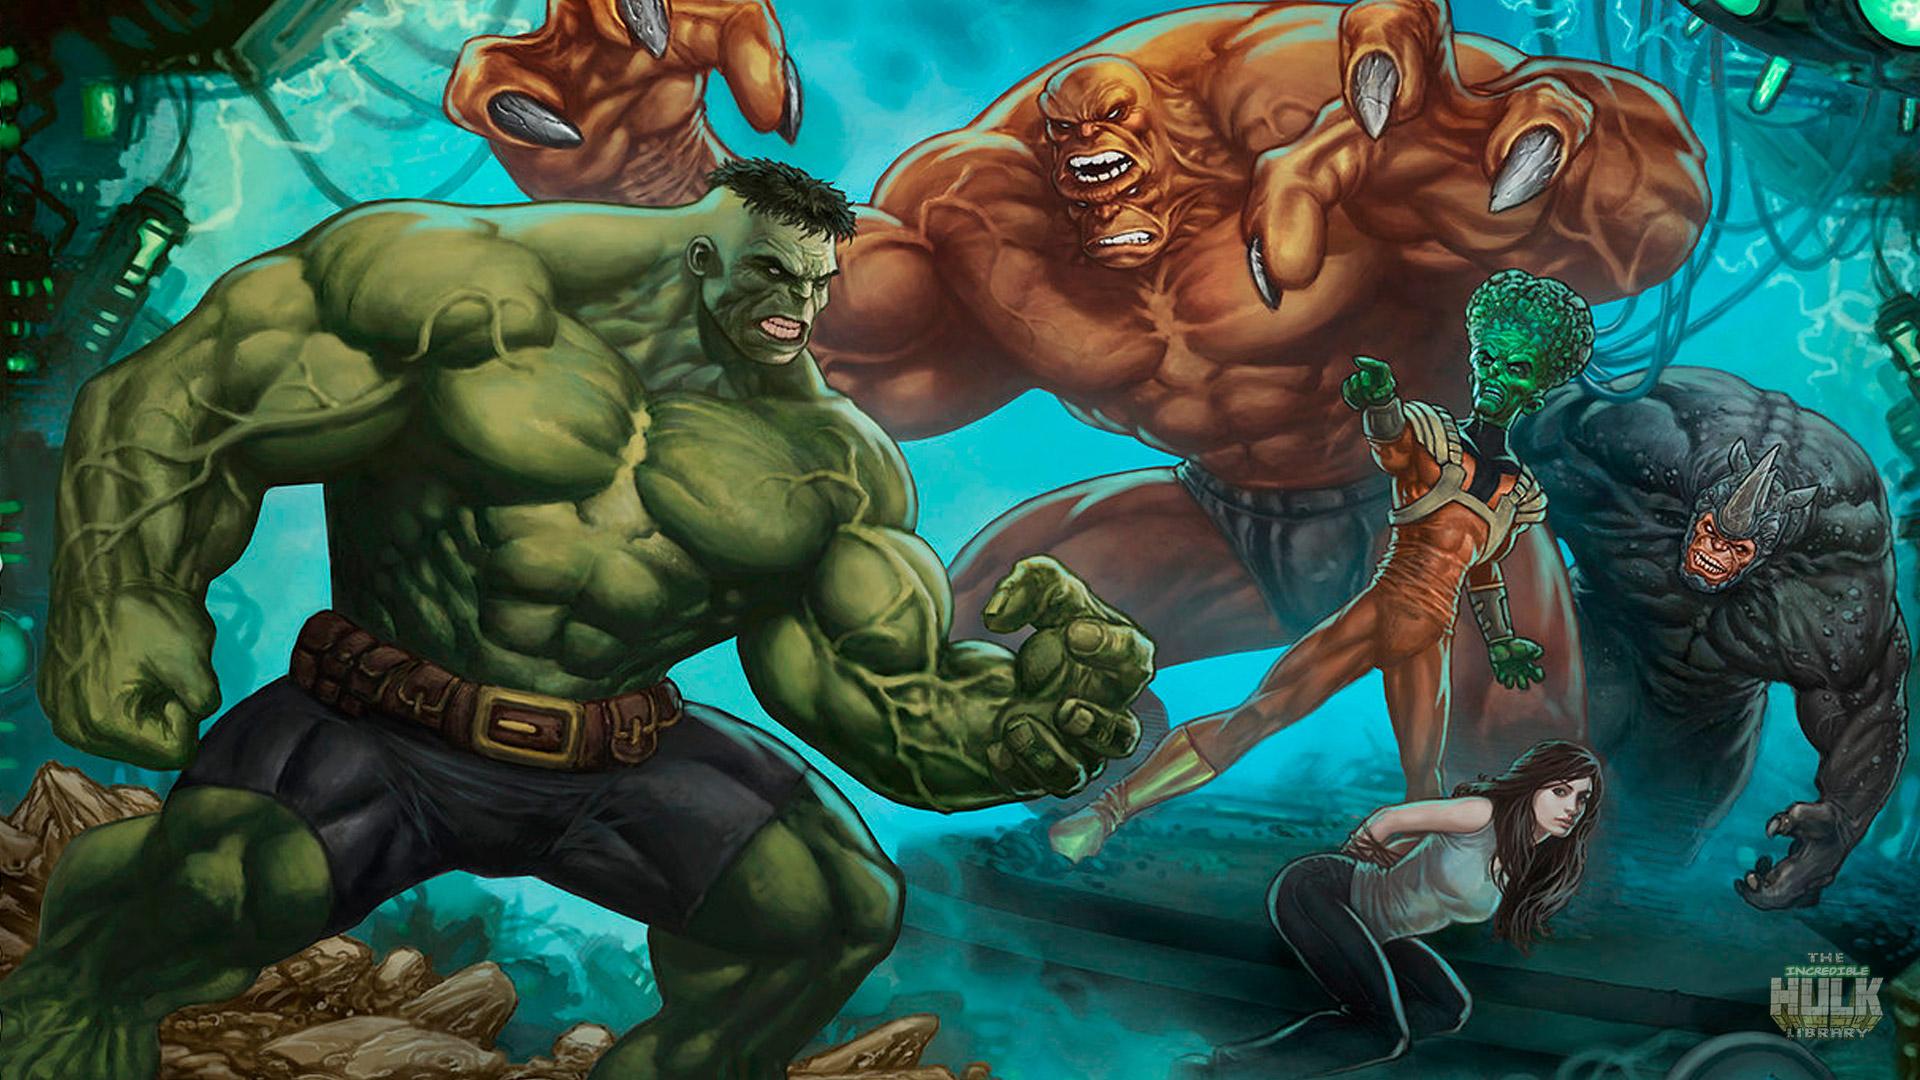 Marvel Hulk Vs The Leader Wallpaper & Background